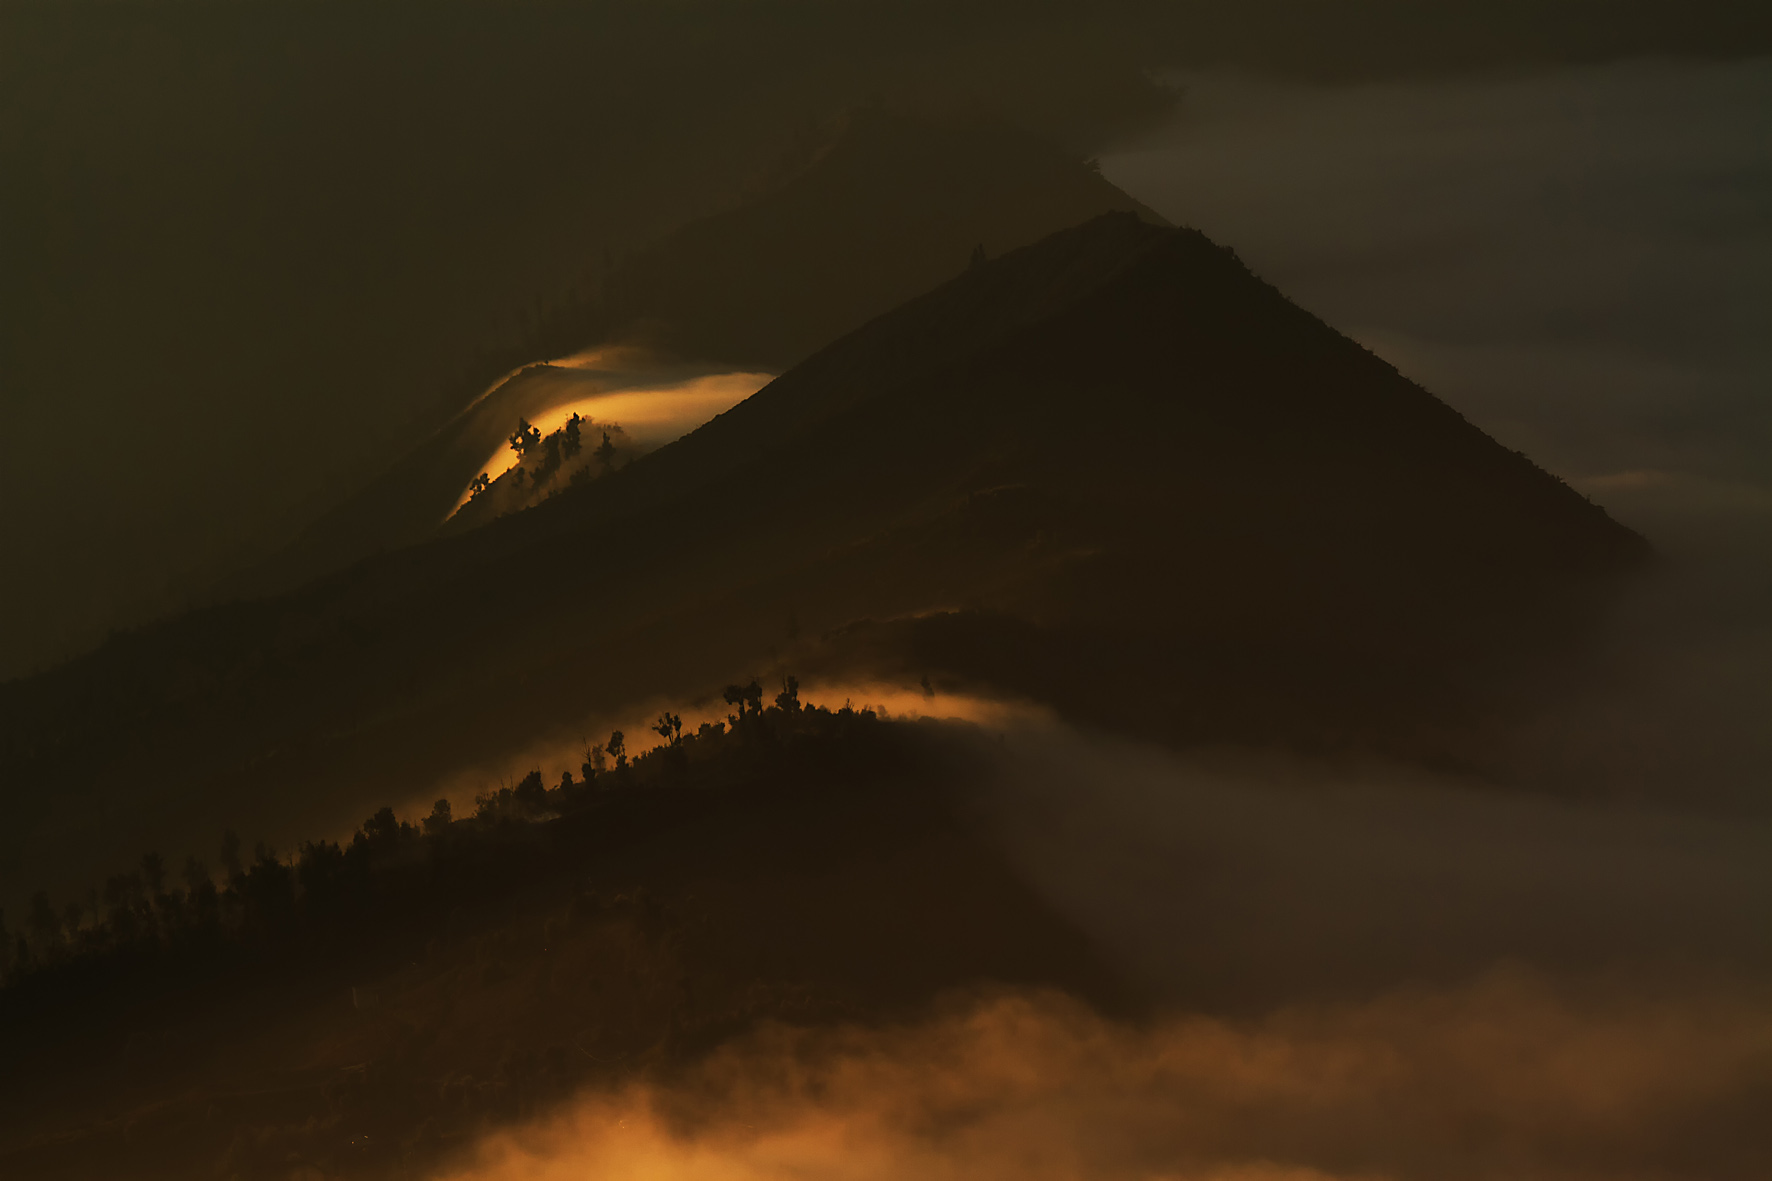 Mist in the caldera around Mount Bromo